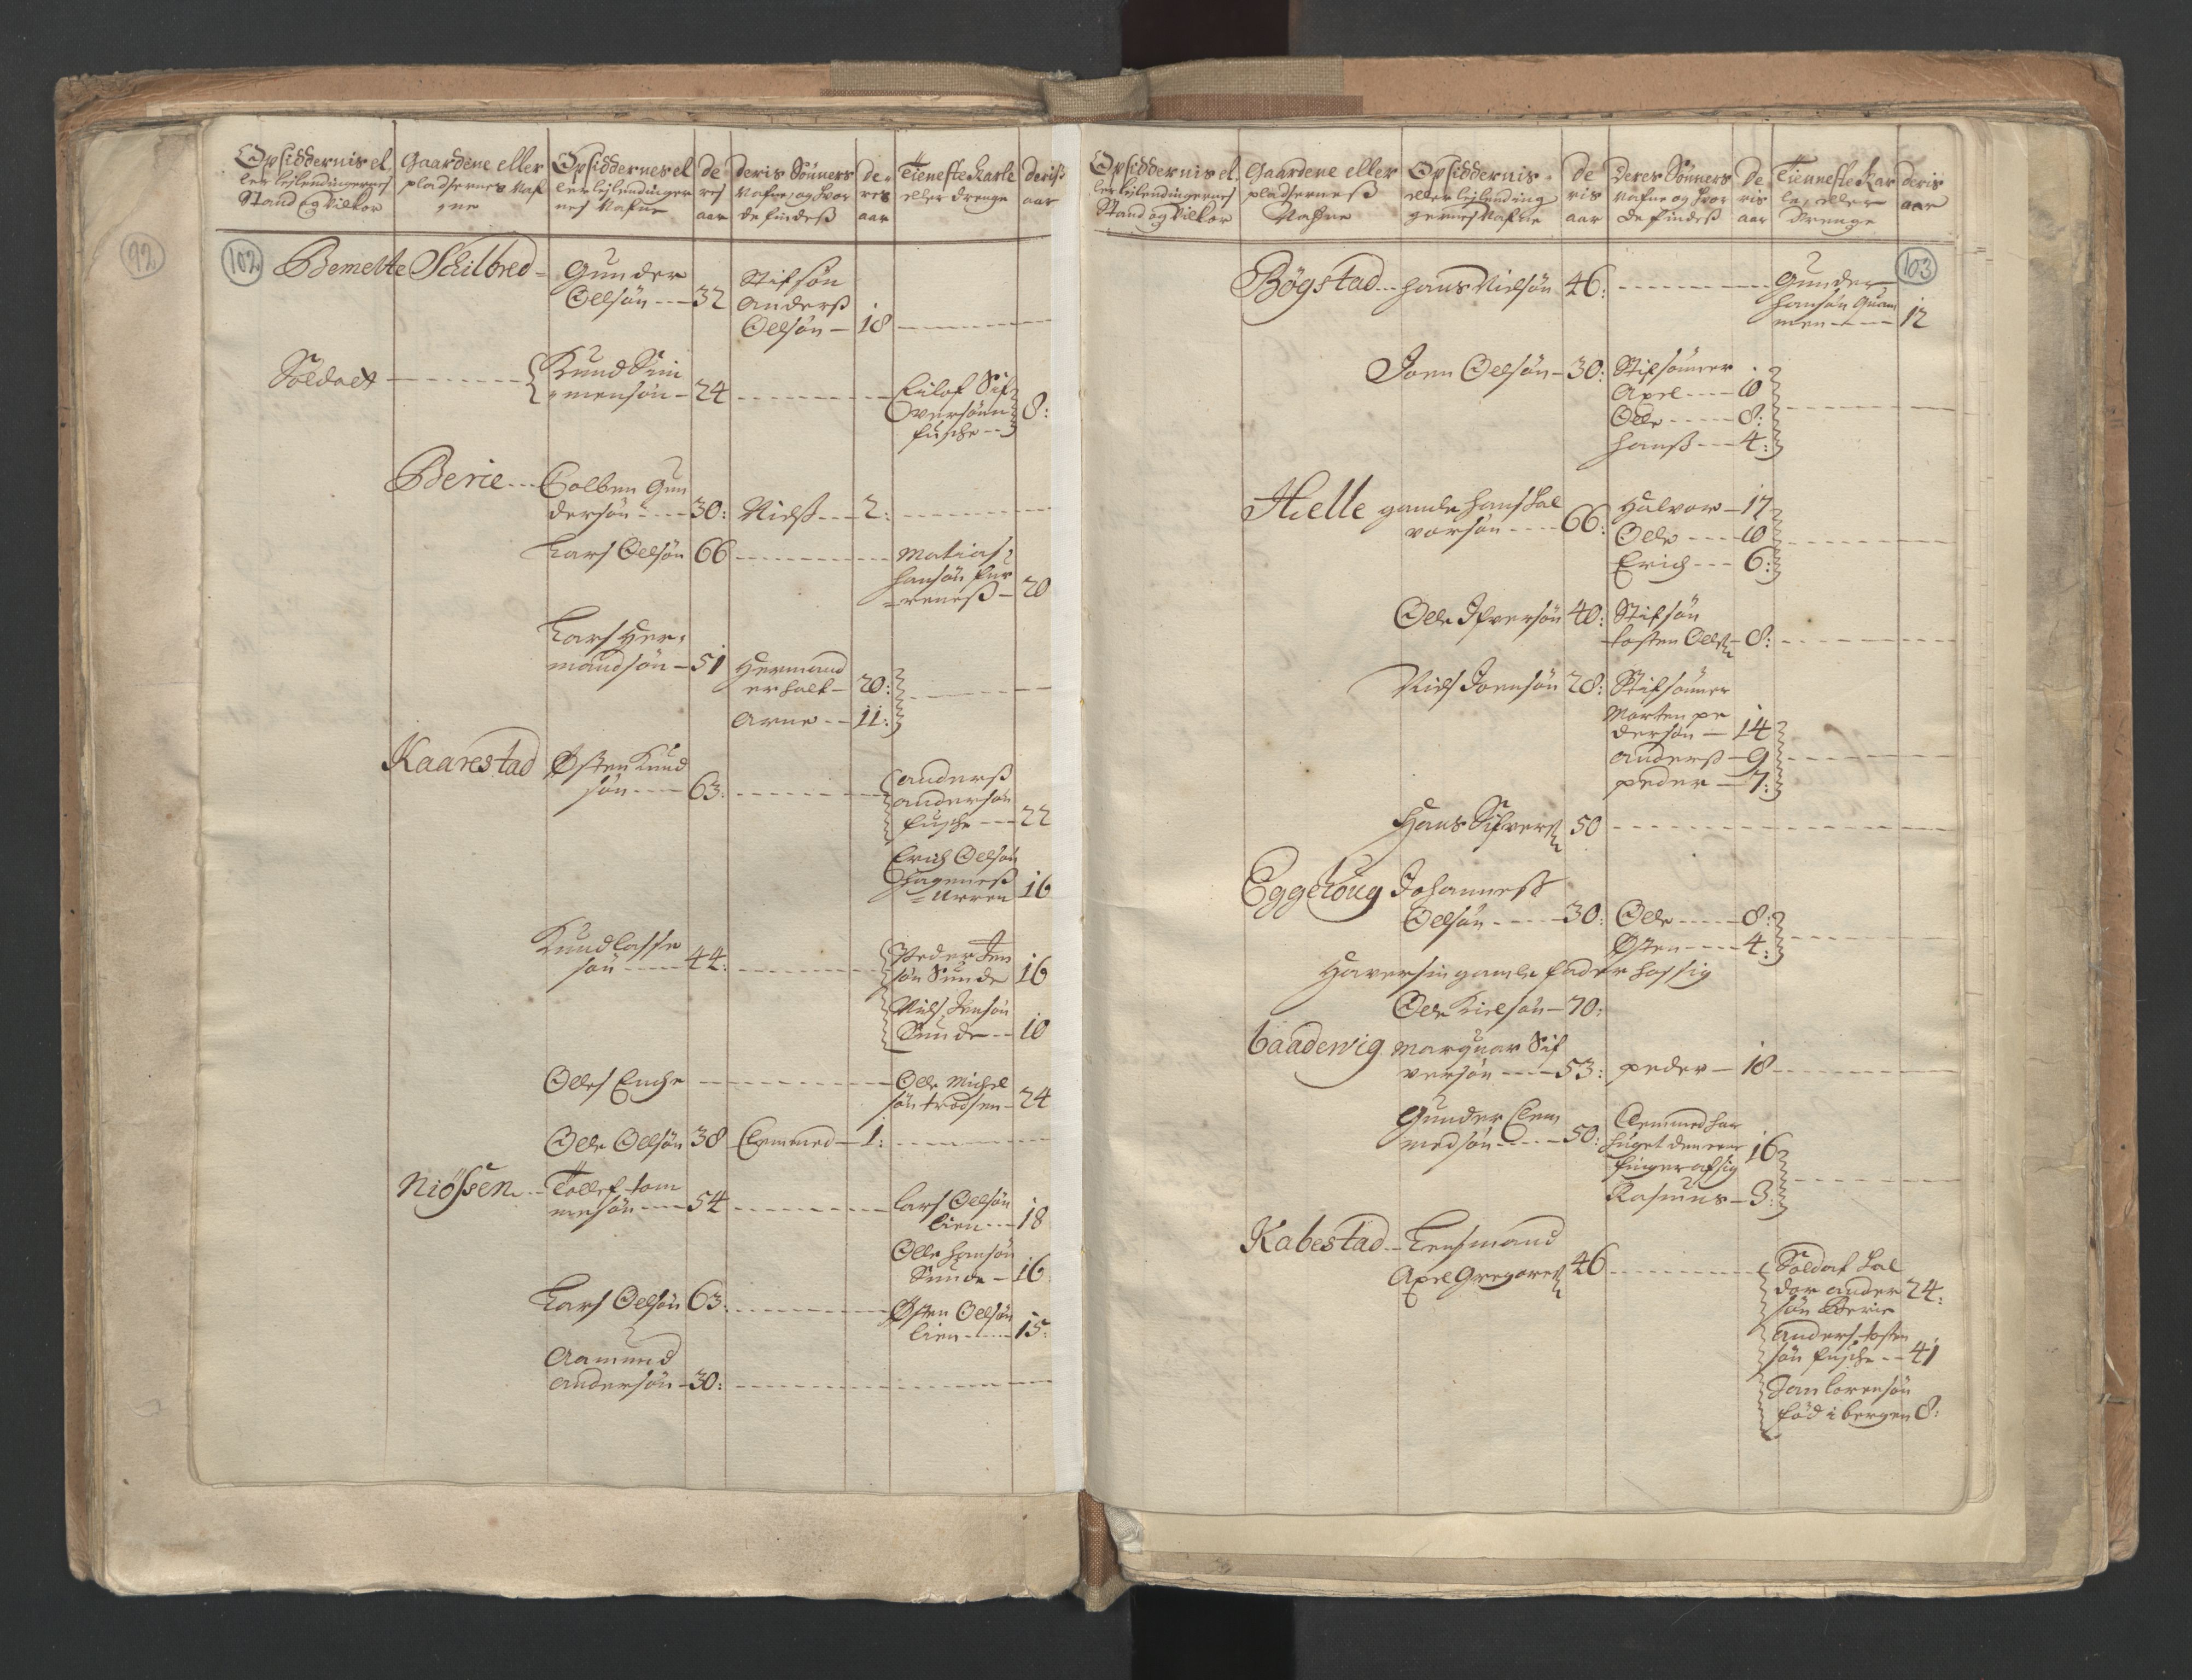 RA, Census (manntall) 1701, no. 9: Sunnfjord fogderi, Nordfjord fogderi and Svanø birk, 1701, p. 102-103